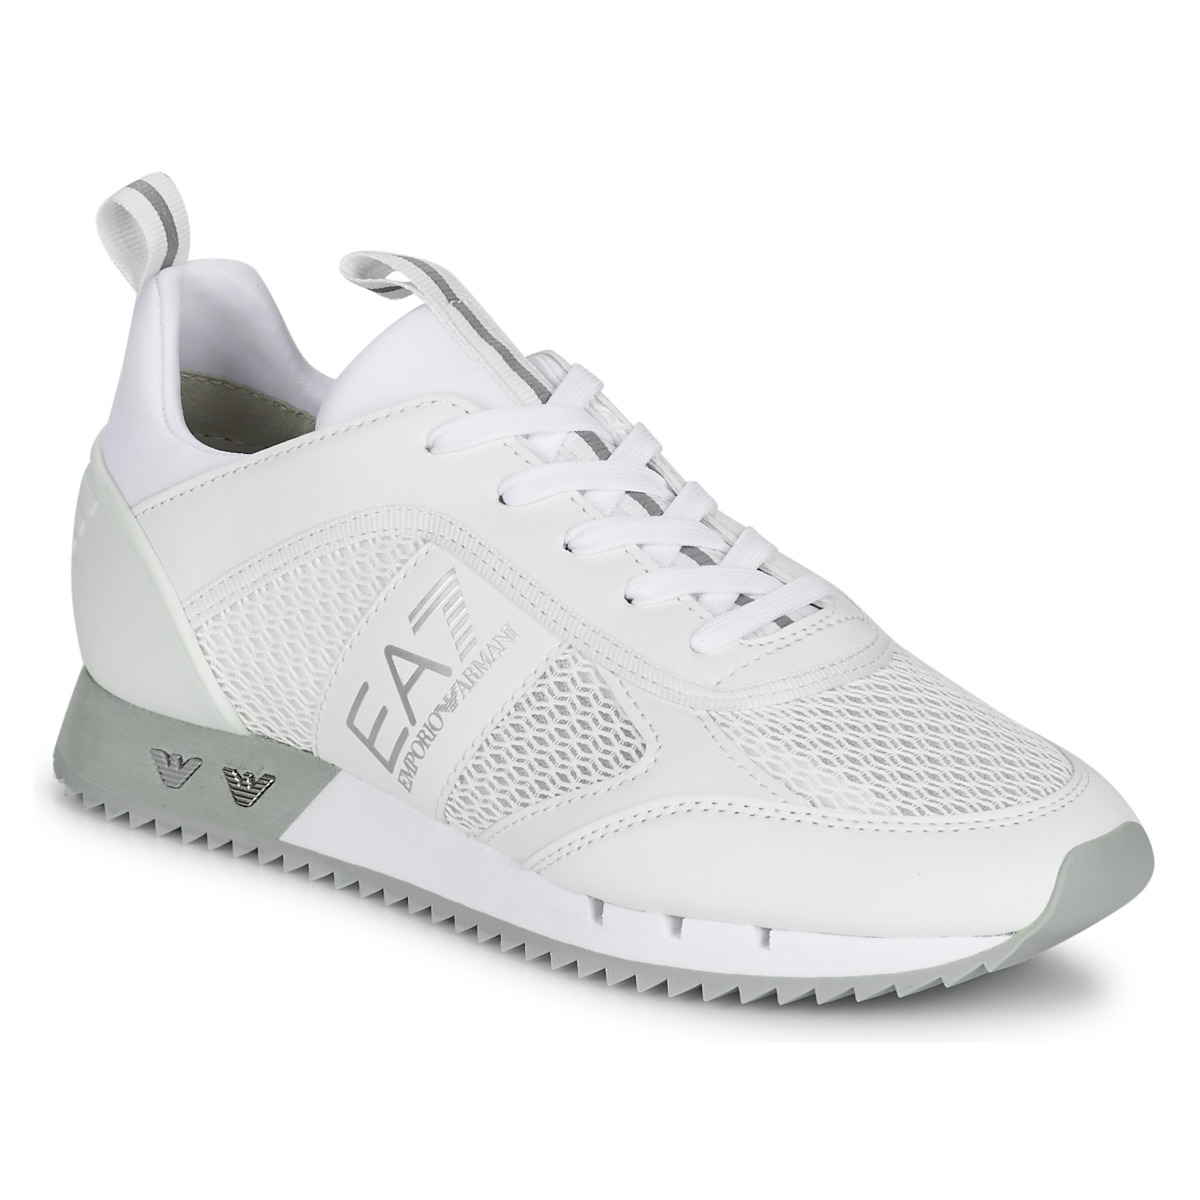 Sko Lave sneakers Emporio Armani EA7 BLACK&WHITE LACES Hvid